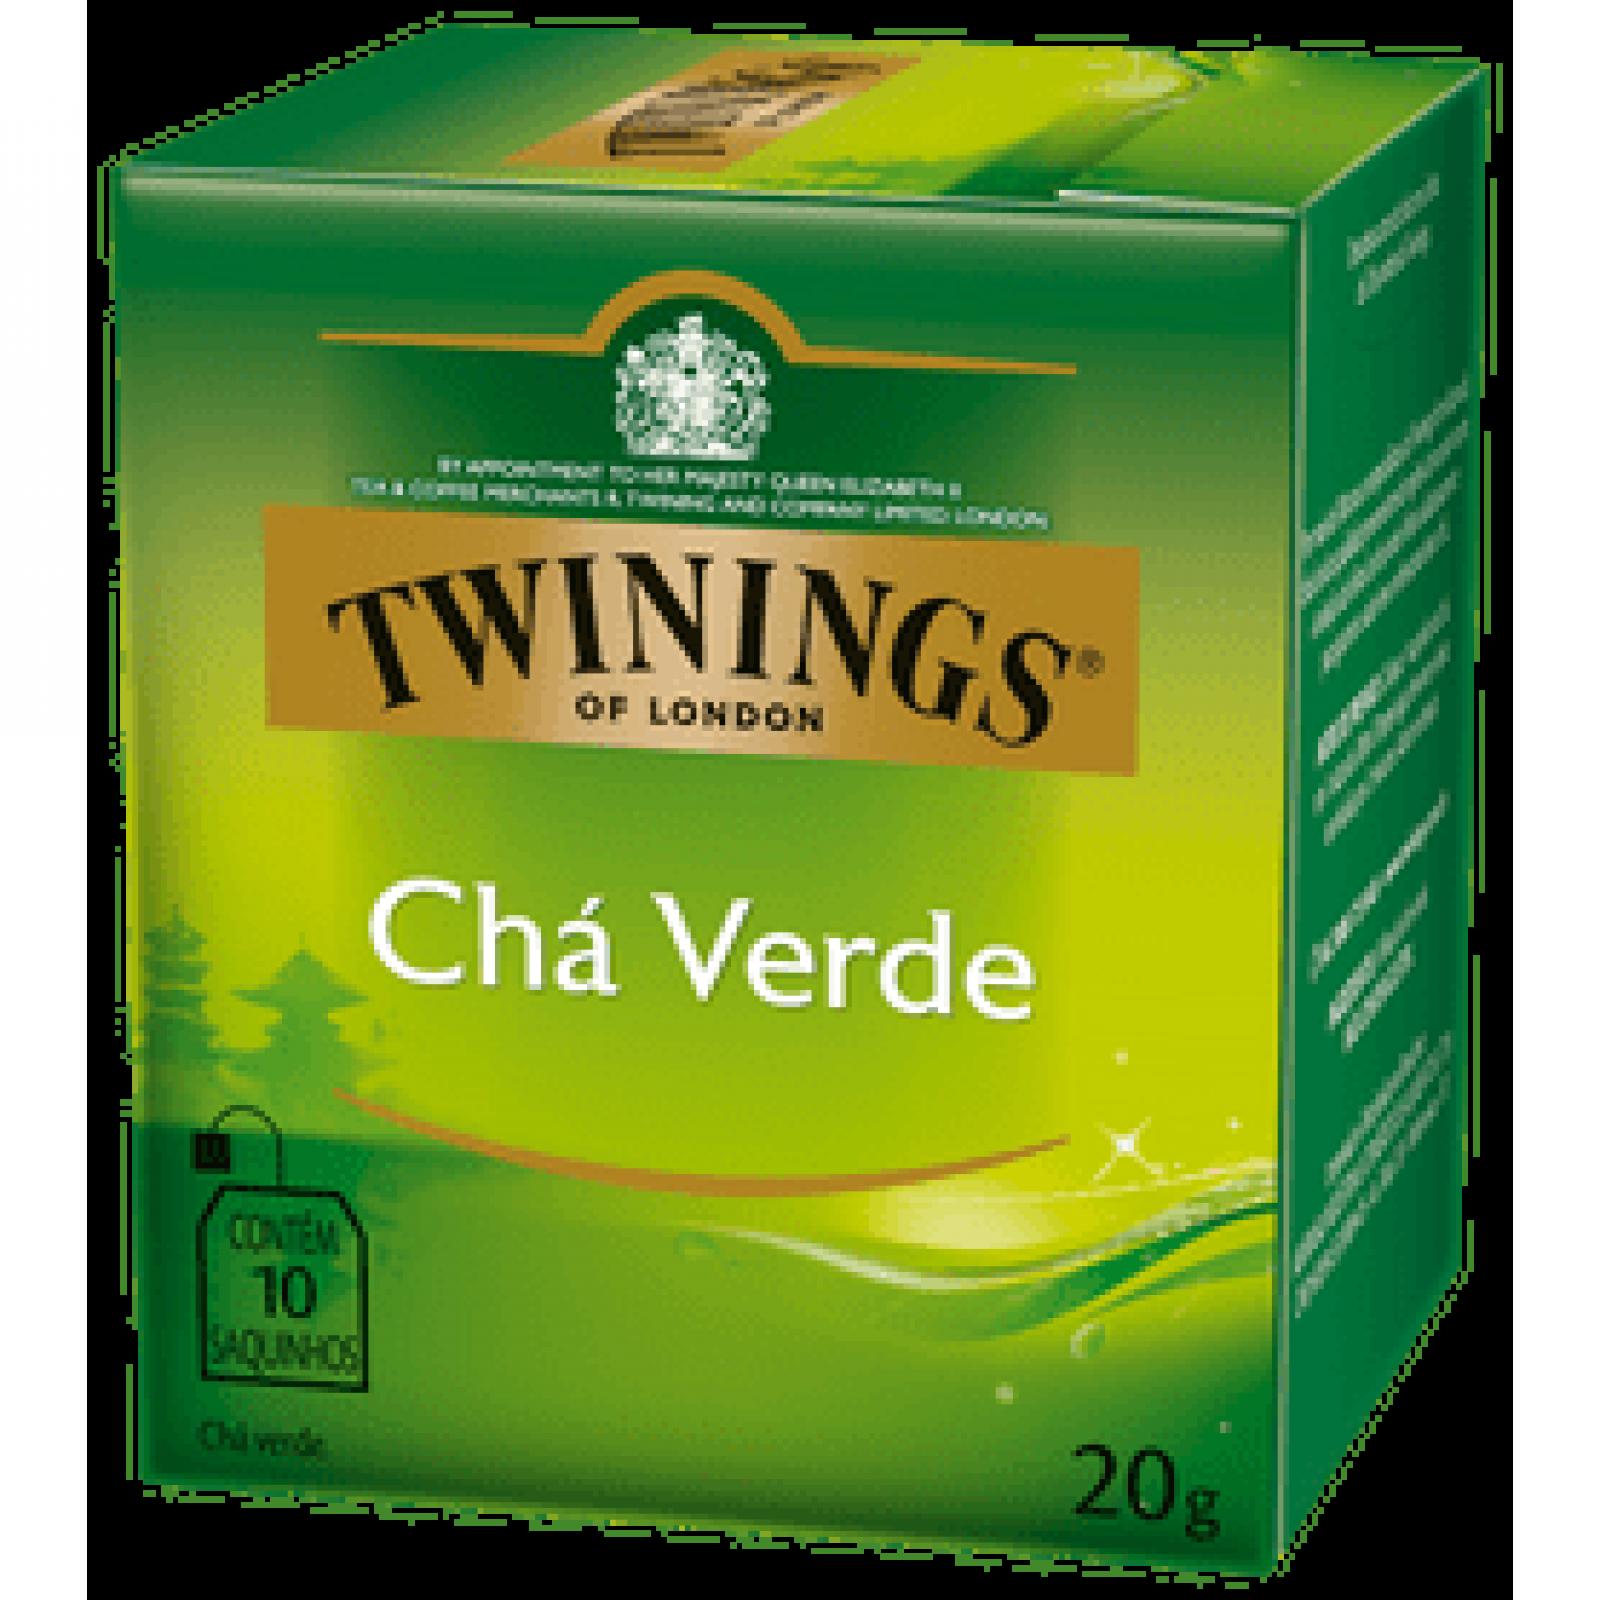 Chá Verde 20g